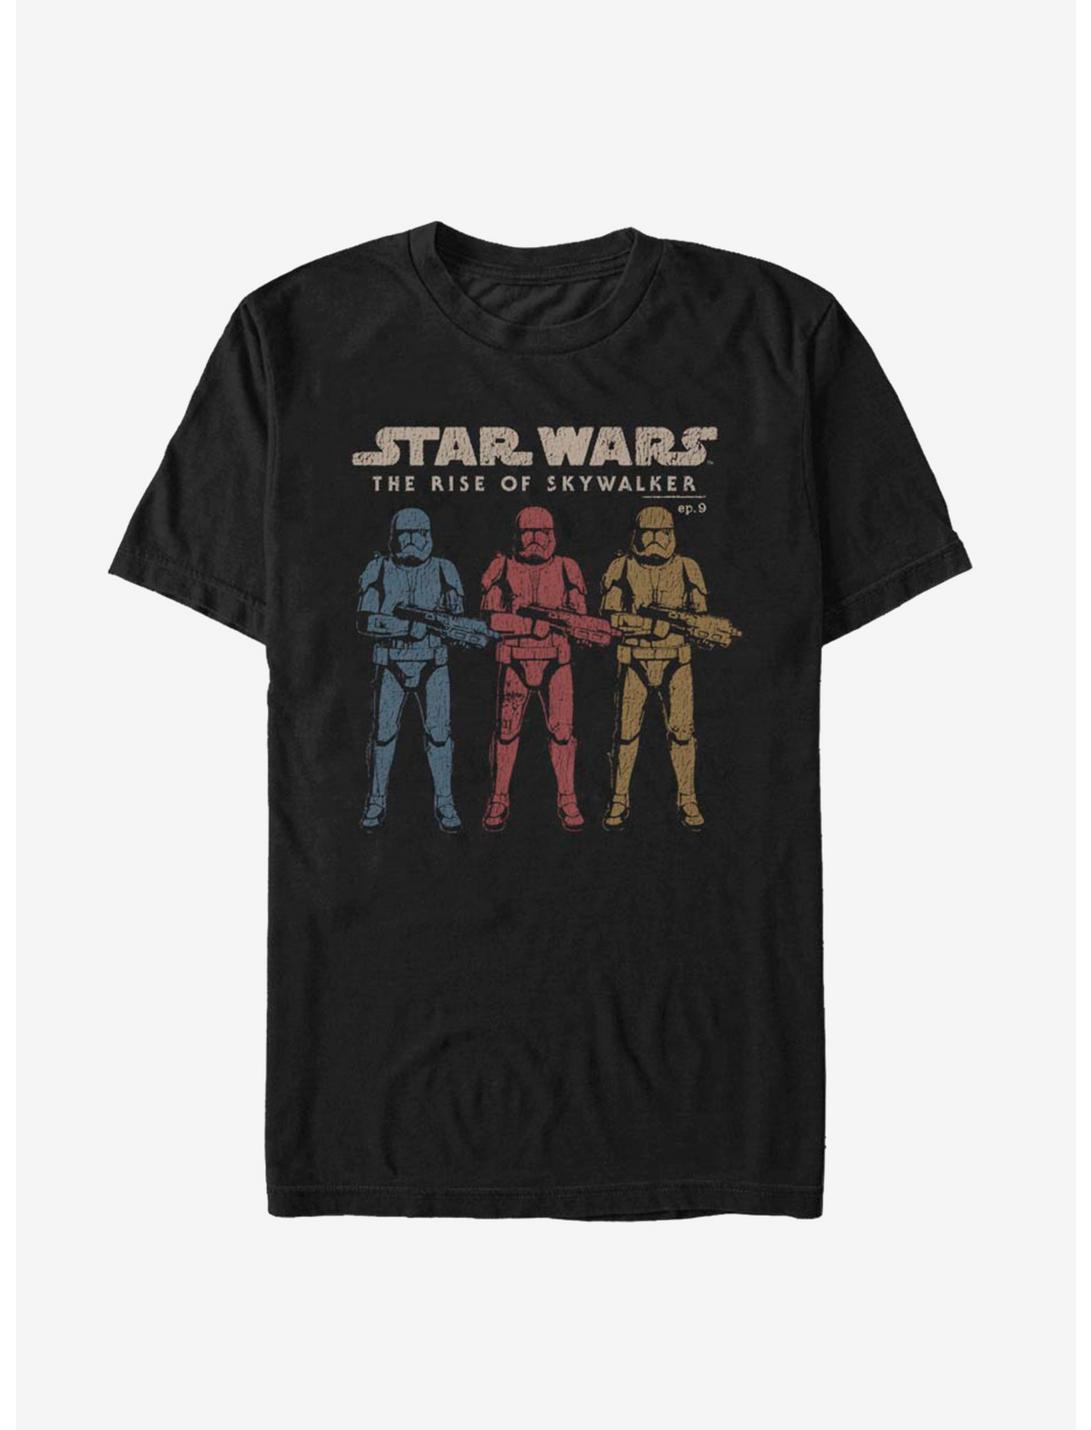 Star Wars Episode IX The Rise Of Skywalker Color Guards T-Shirt, BLACK, hi-res